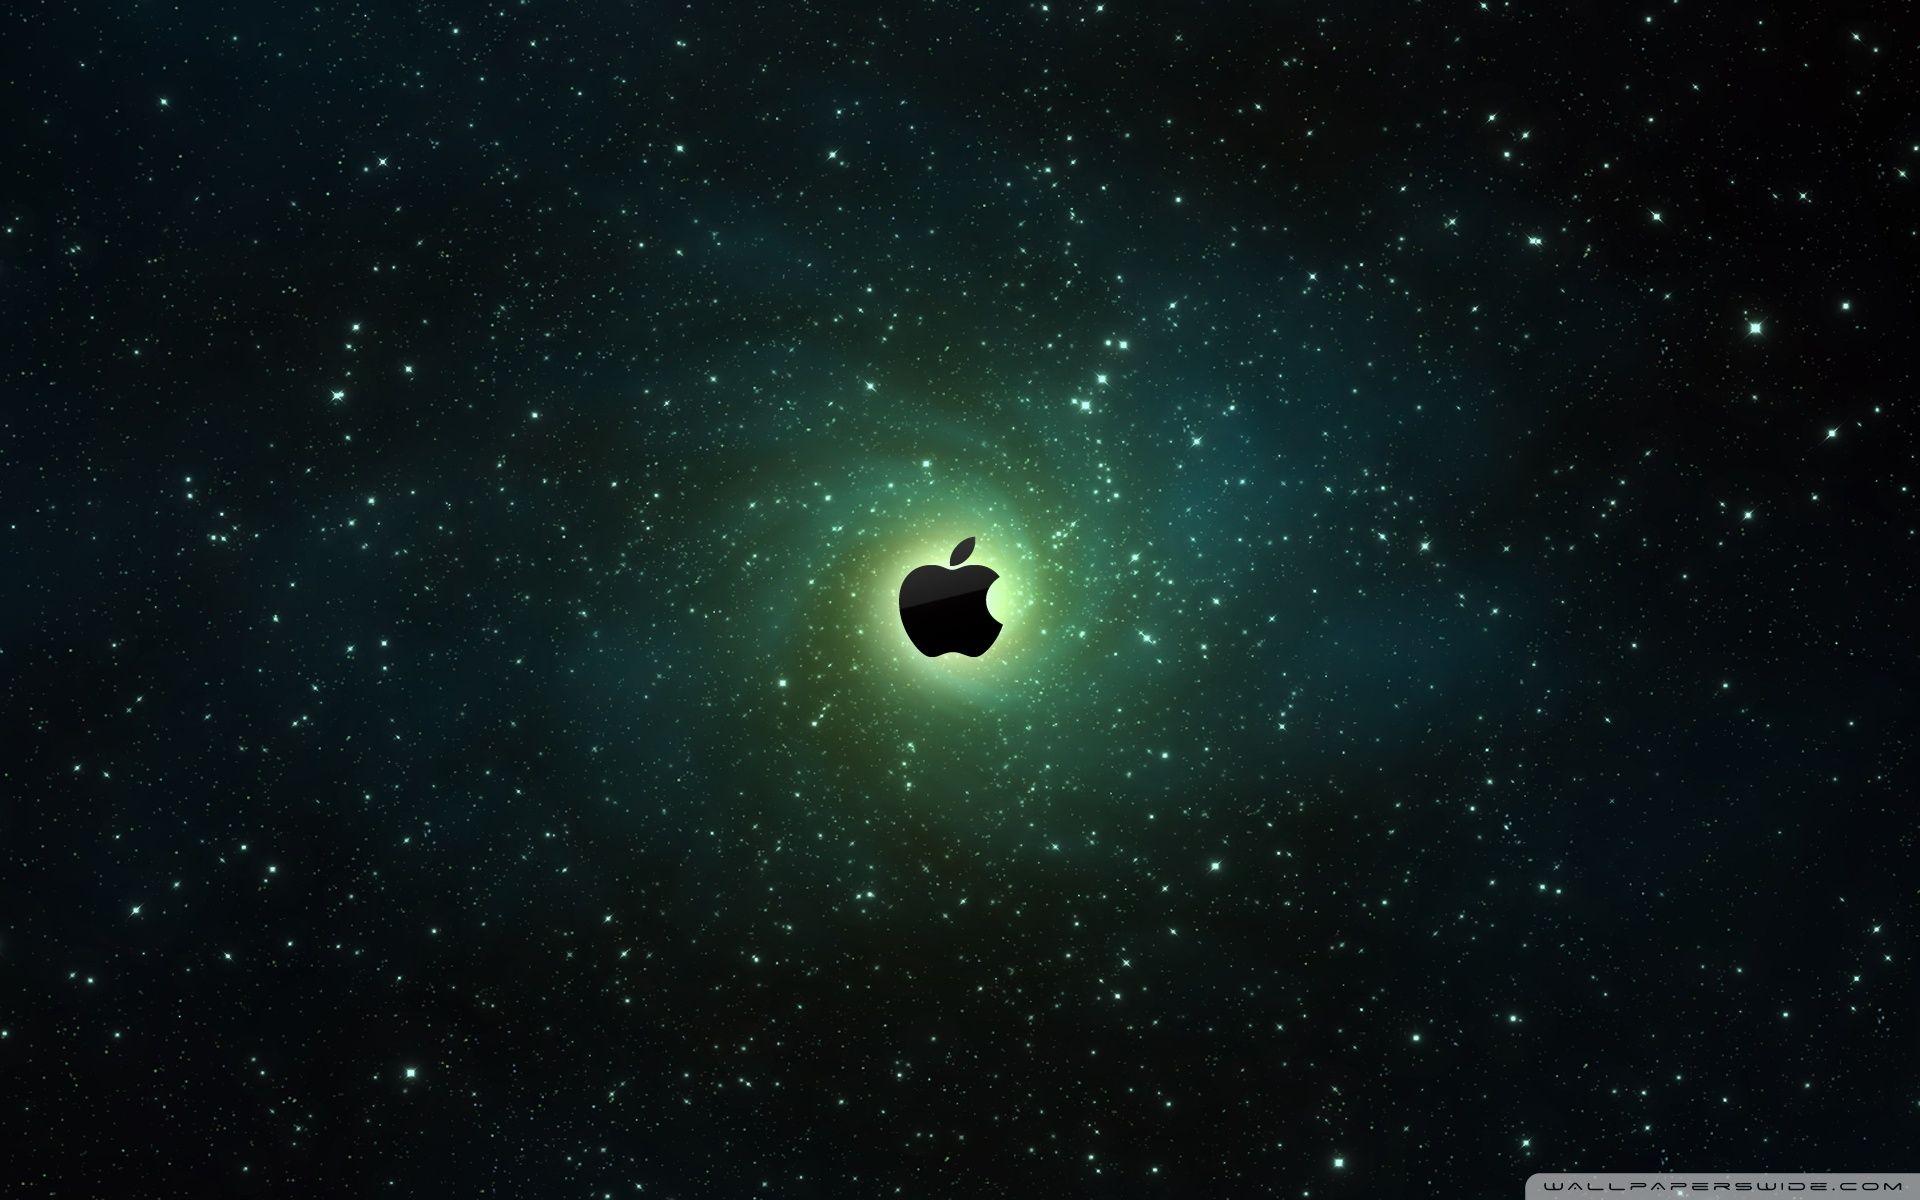 Bạn là fan của Apple và đang tìm kiếm hình nền cho chiếc điện thoại của mình? Hãy khám phá bộ sưu tập những hình nền Apple Galaxy tuyệt đẹp tại Wallpaper Cave, mang đến cho bạn trải nghiệm độc đáo và đầy ấn tượng.